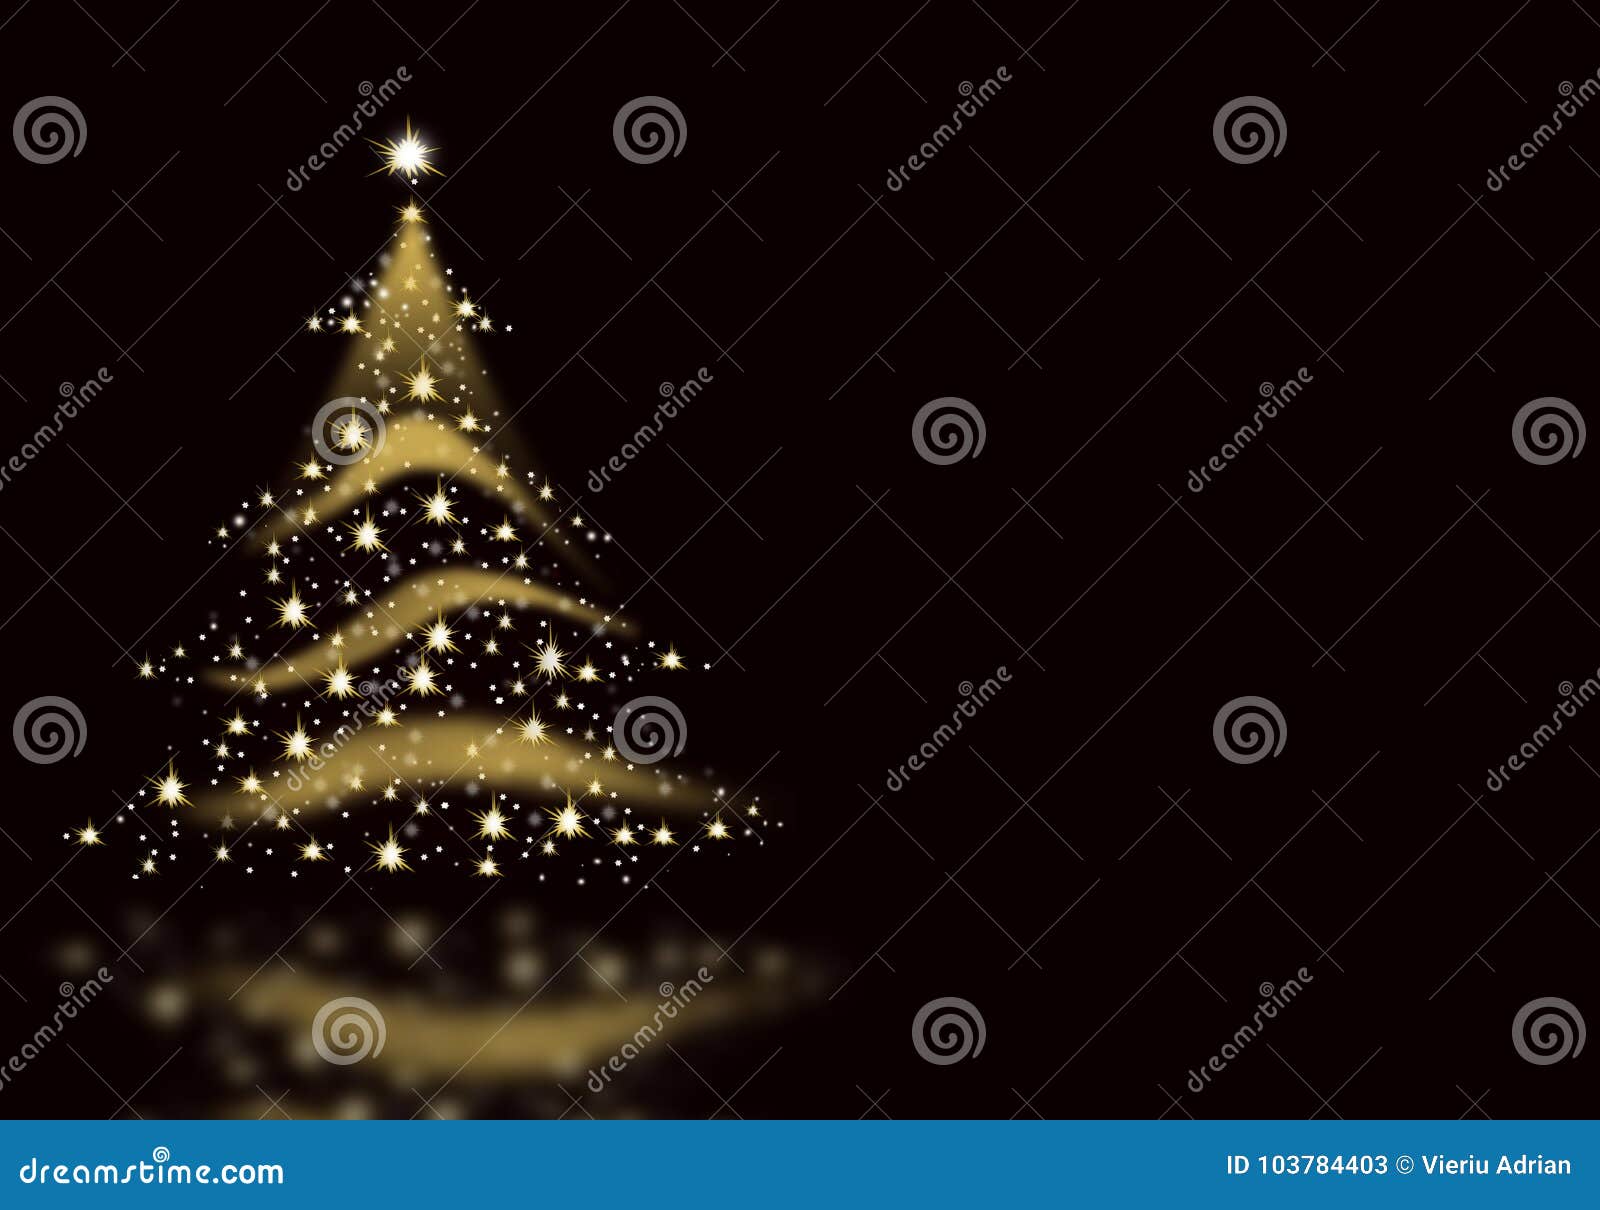 Nếu bạn đang tìm kiếm một hình ảnh Giáng sinh tuyệt đẹp, hãy xem bức tranh nền đen và vàng này! Với sự kết hợp giữa màu sắc đen và vàng lấp lánh, bức tranh sẽ mang đến cho bạn không gian Giáng sinh thật phong cách và sang trọng. Hãy để hình ảnh này làm nền tảng cho ngôi nhà của bạn trong mùa lễ hội này và khiến bạn cảm thấy đầy dồi dào niềm vui và hạnh phúc!